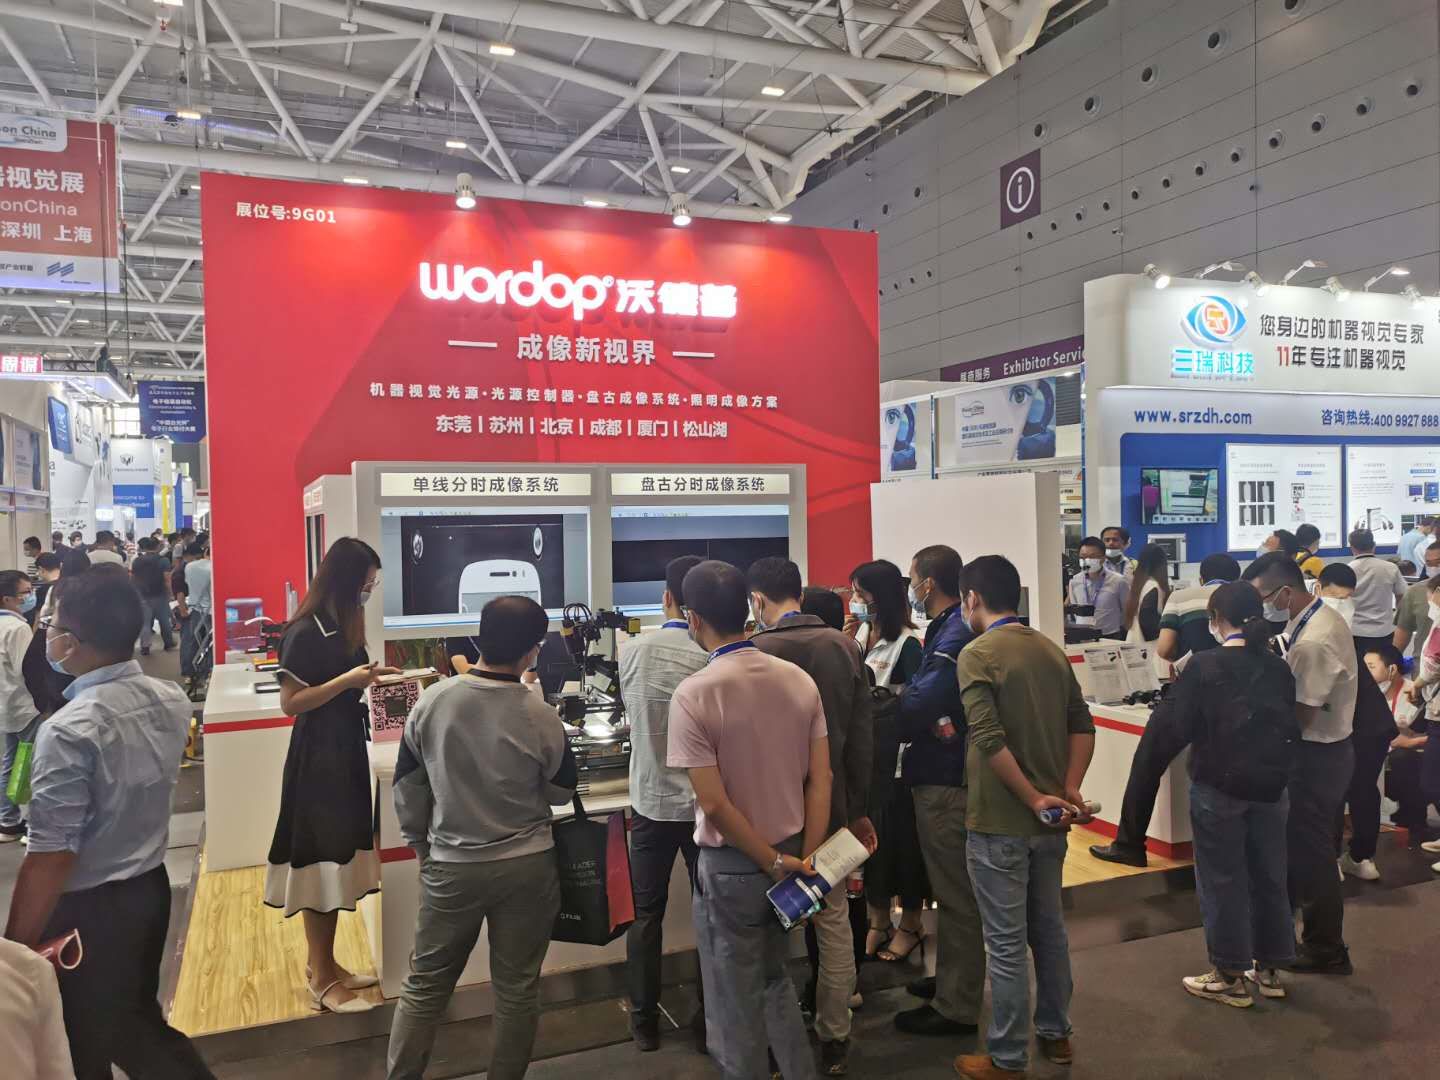 Wordop asiste a la exposición de visión artificial visionchina 2020